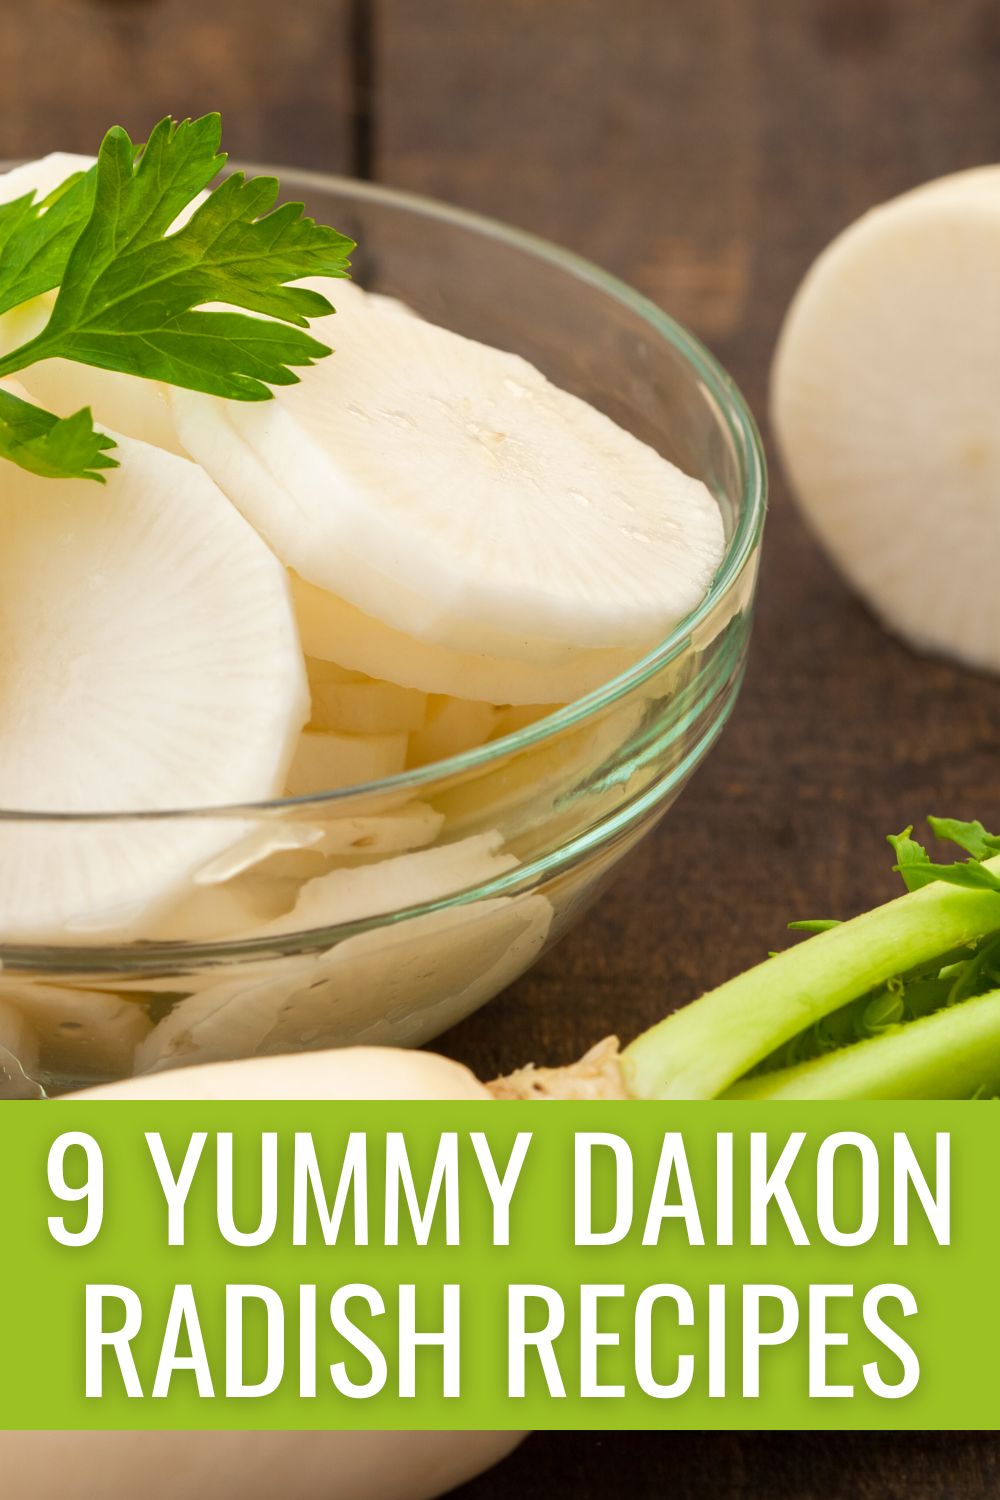 9 Yummy Daikon Radish Recipes